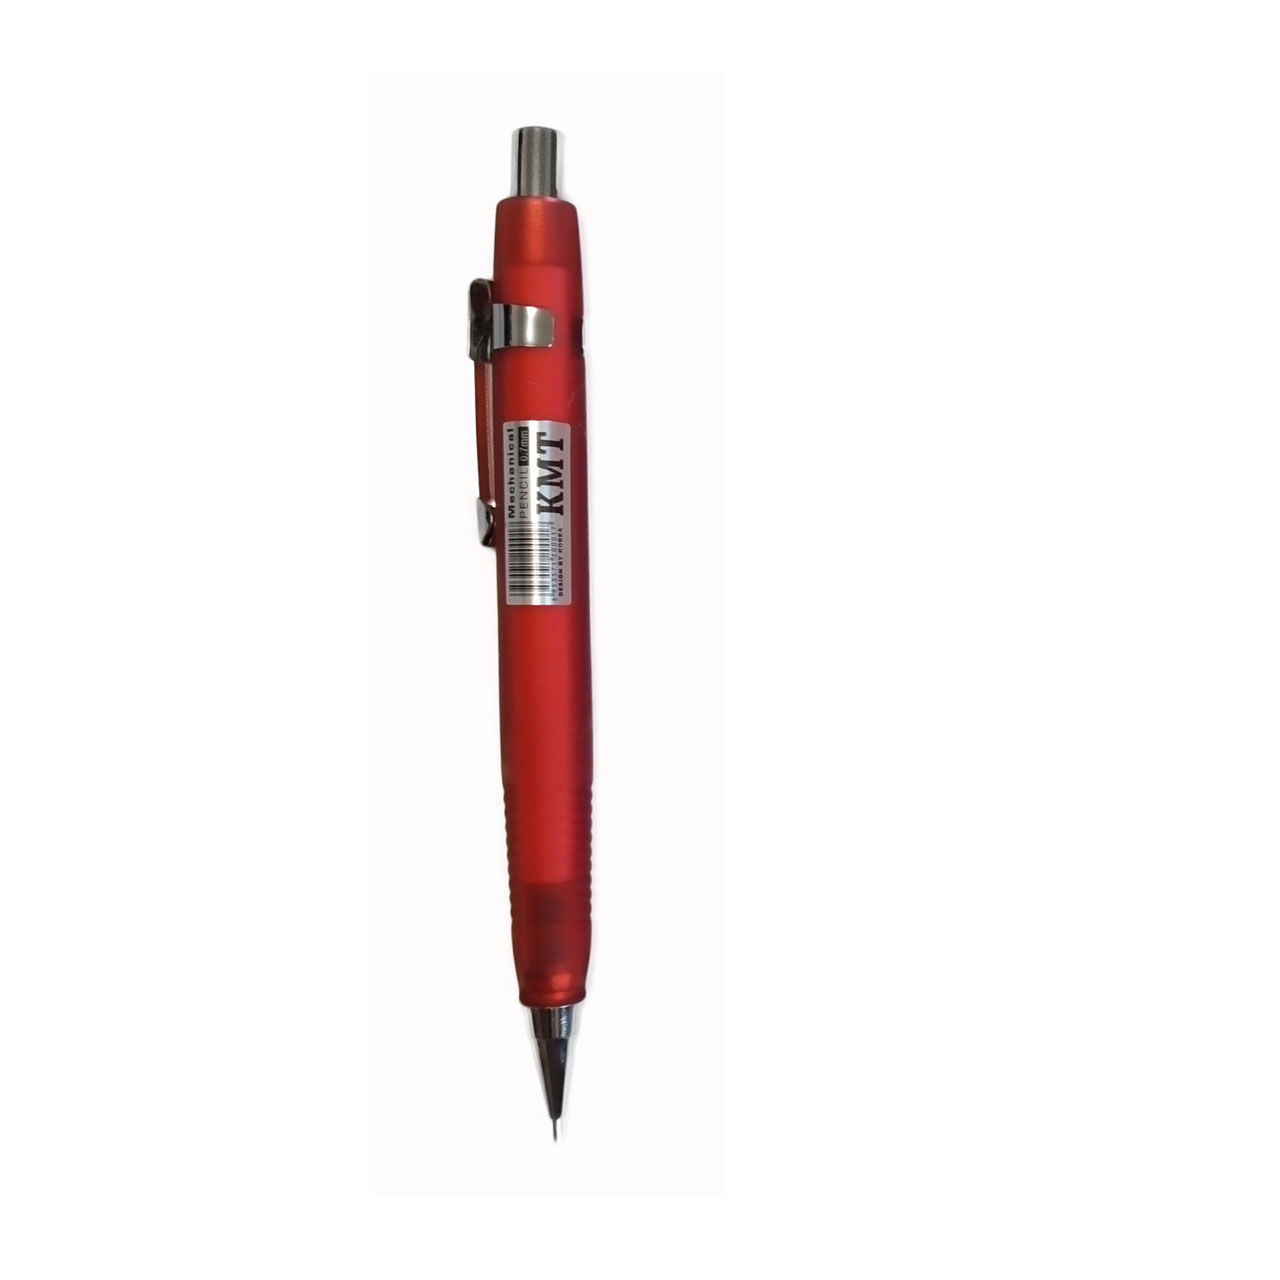 مداد نوکی 0.7 میلیمتر کی تی ام مدل T3 کد 7